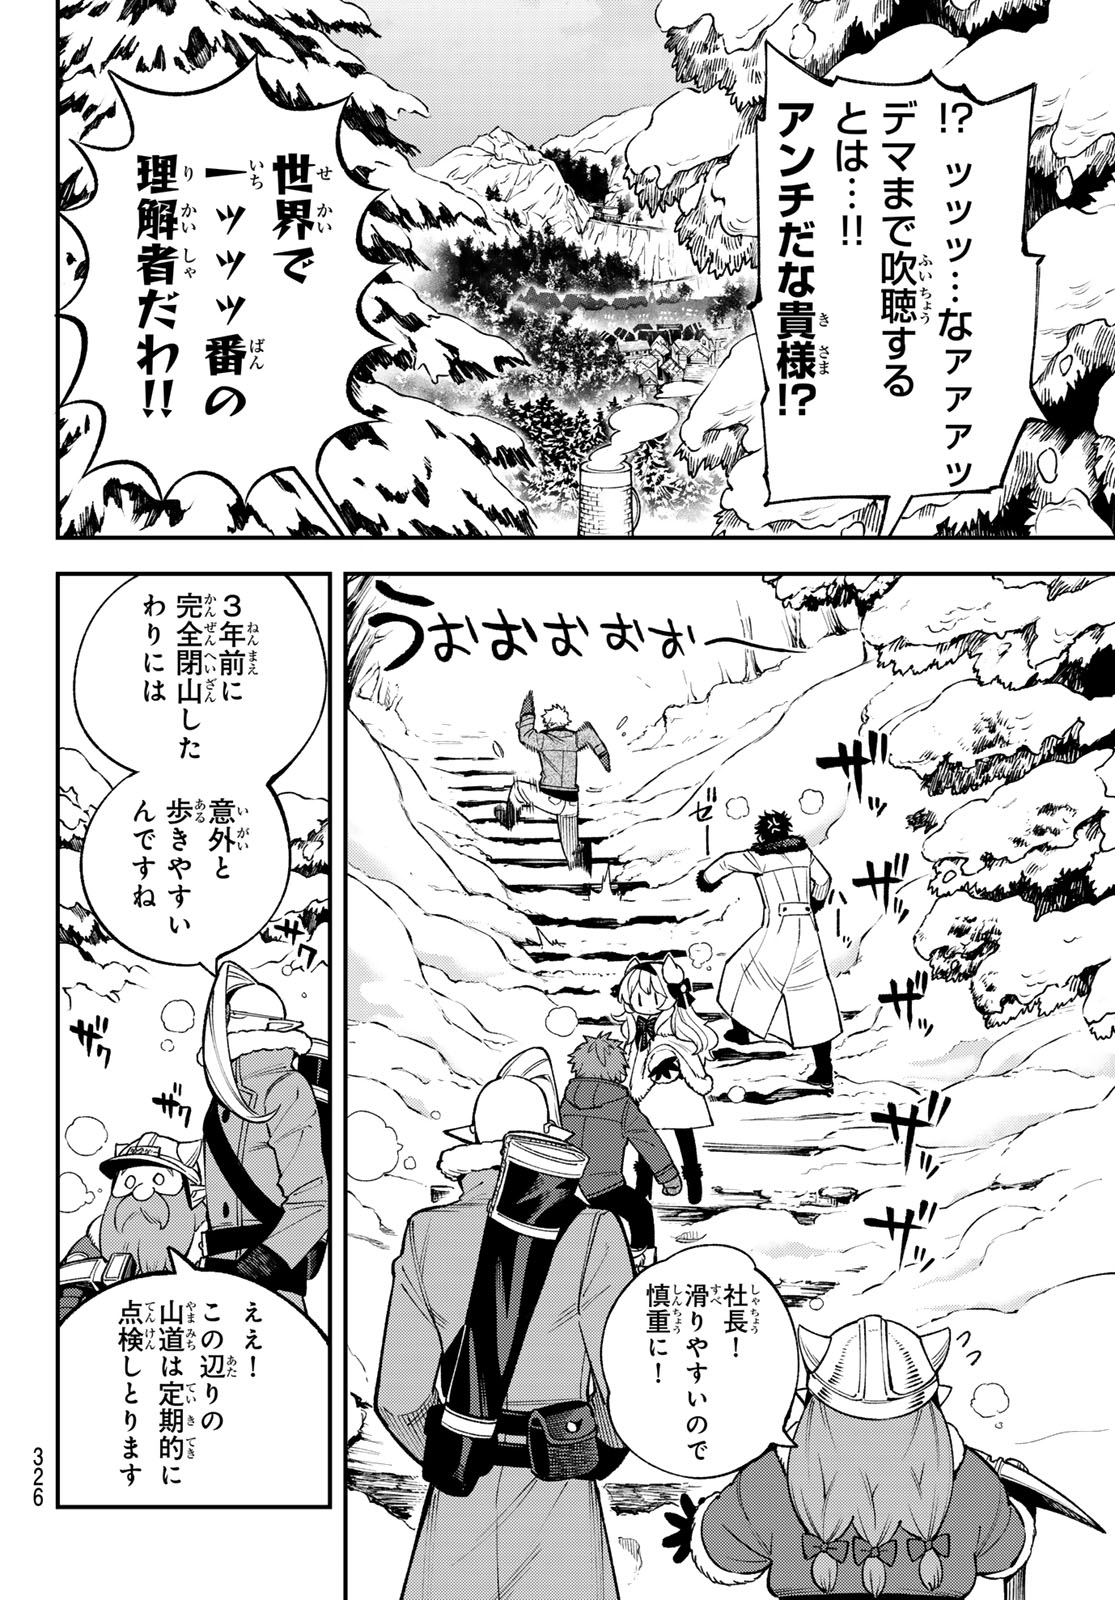 Sudachi no Maoujou - Chapter 29 - Page 2